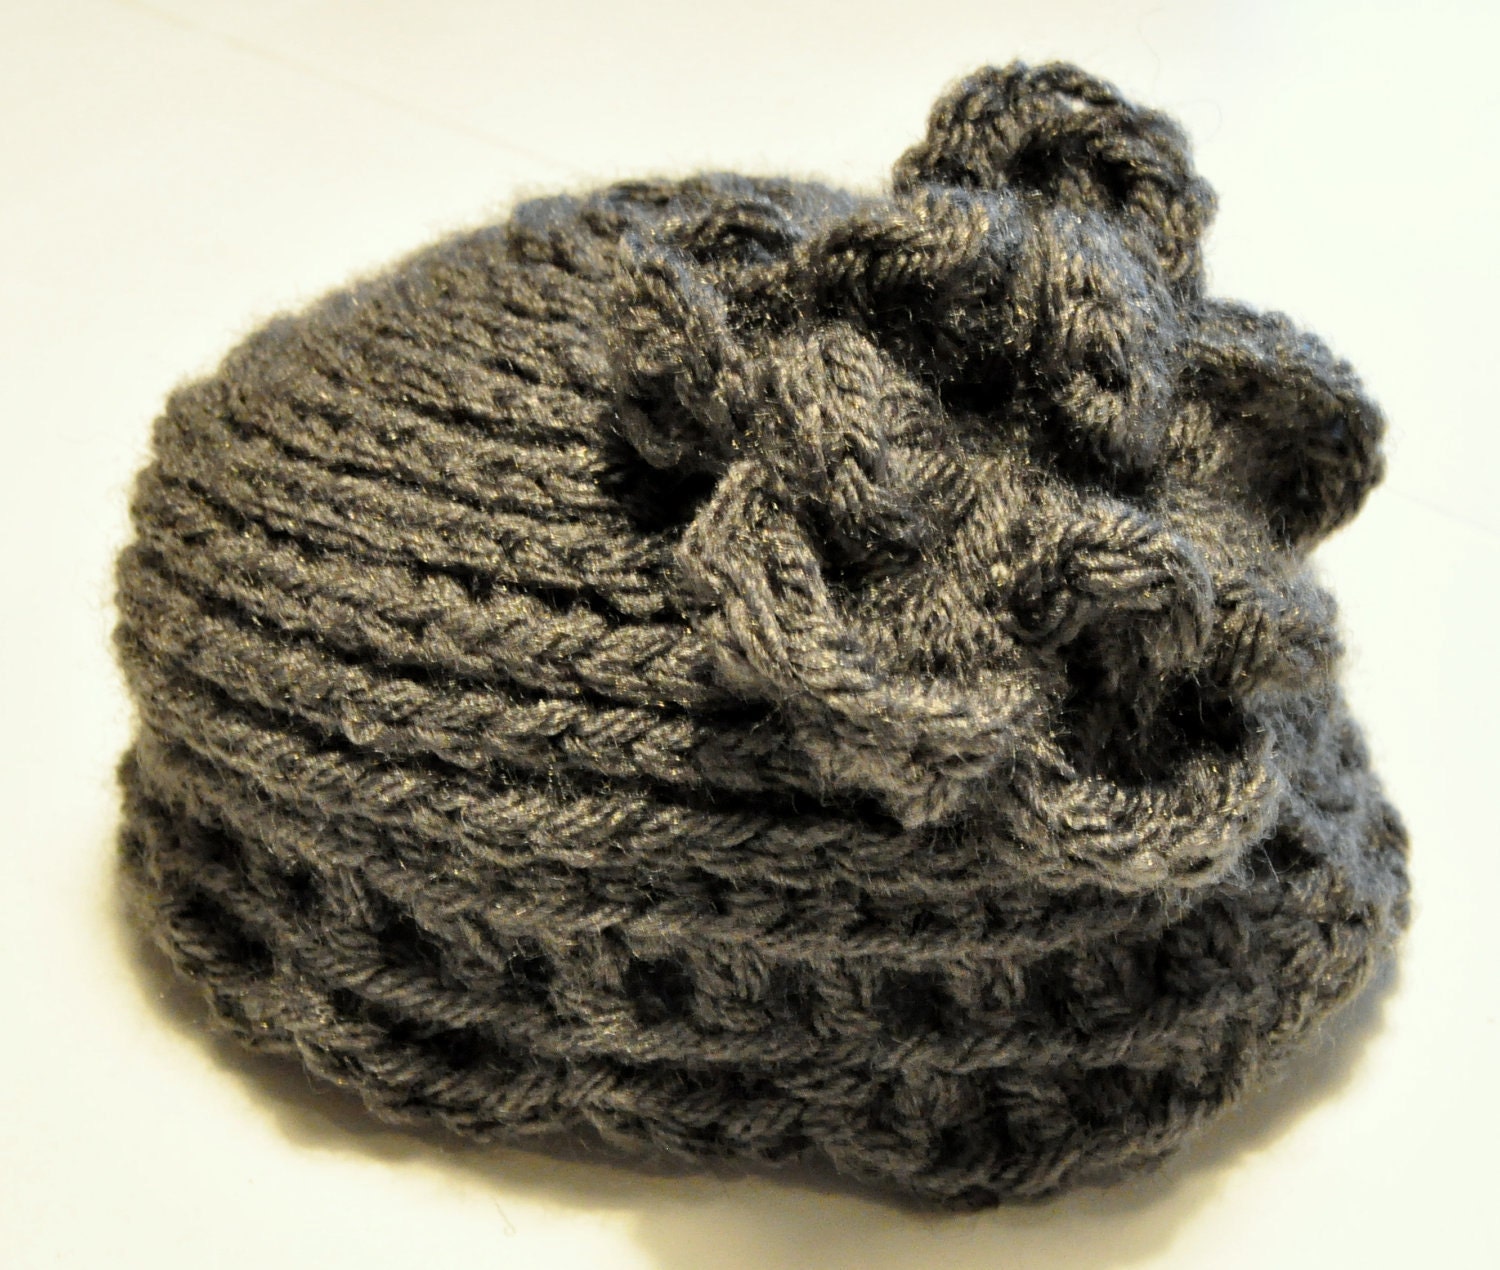 Crocheted Newborn Hat with Flower